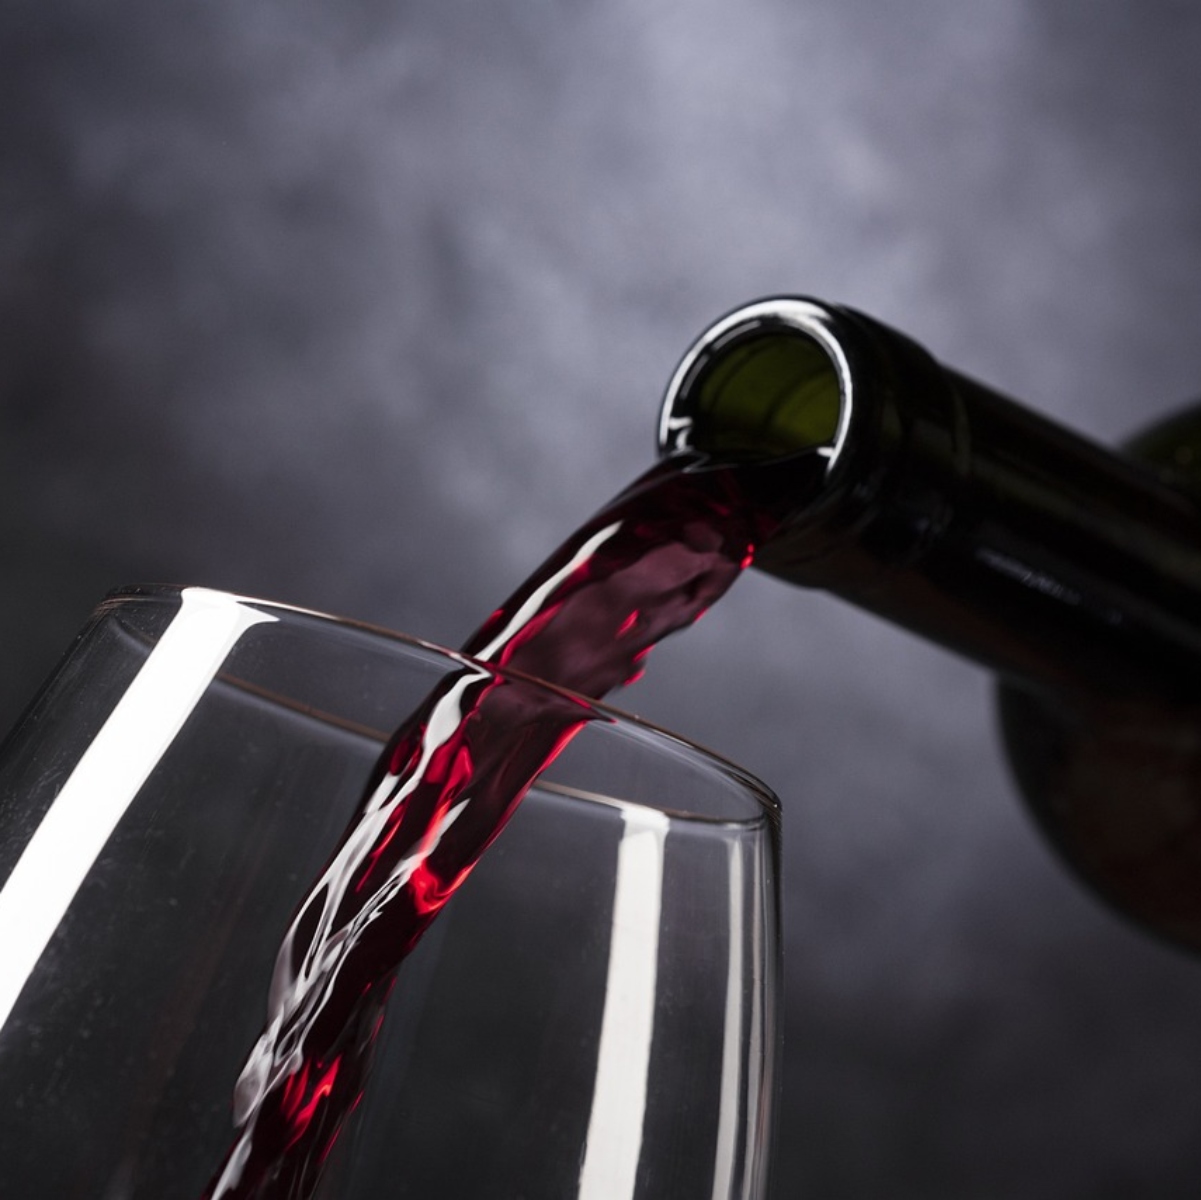  Uma série de estudos feitos publicados no Journal for Clinical Medicine revelaram que beber vinho tinto pode estar relacionado com o aumento da libido. 